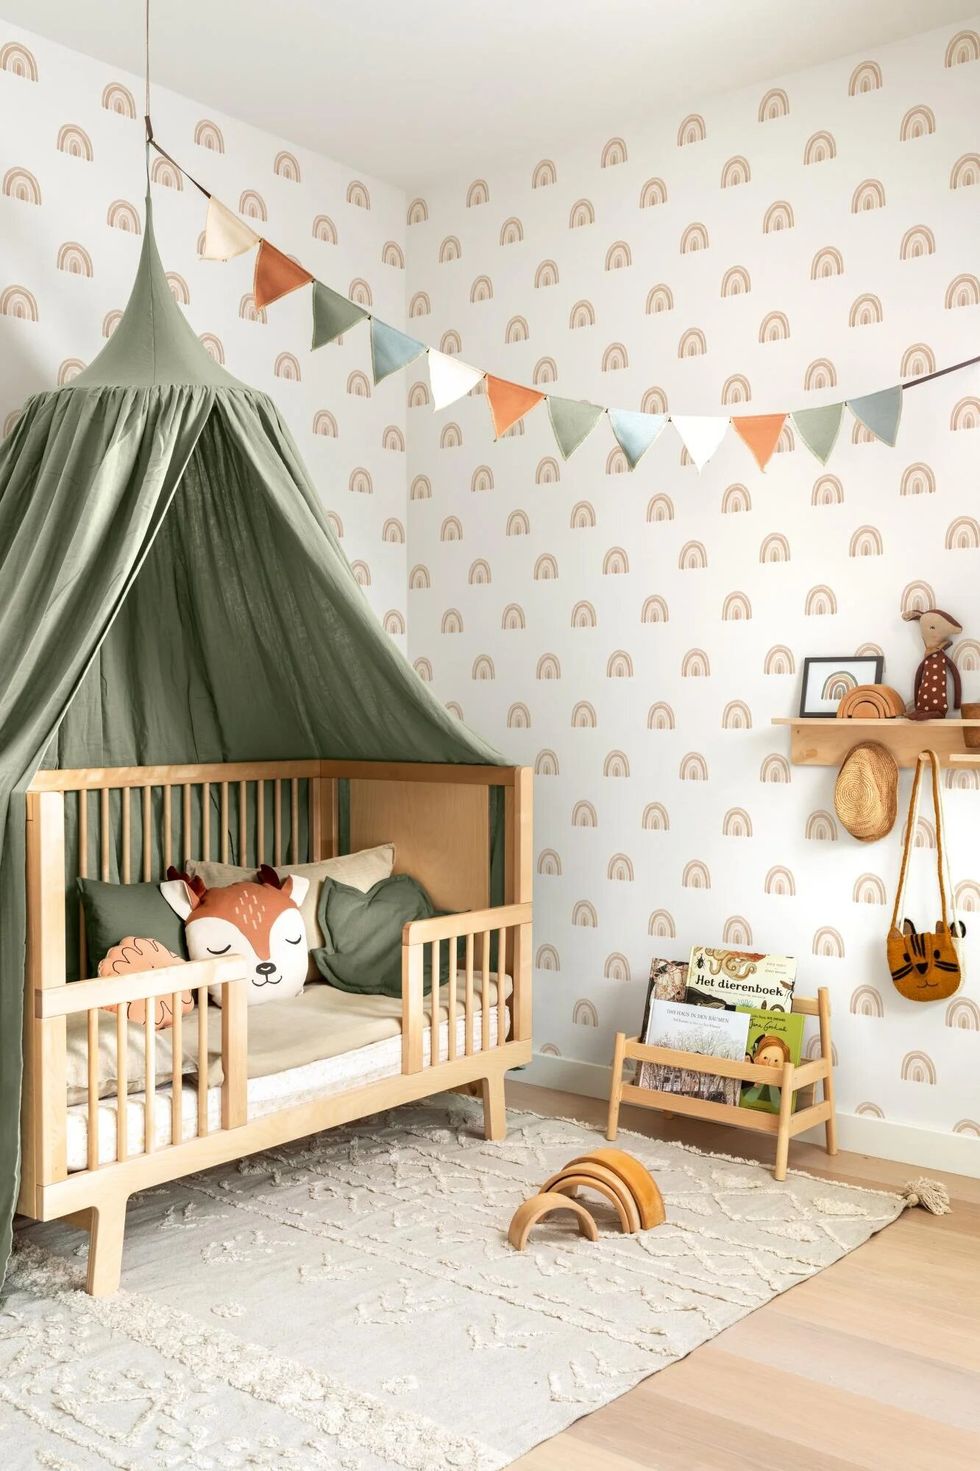 12 diseños de papeles pintados para decorar la habitación infantil - Foto 1